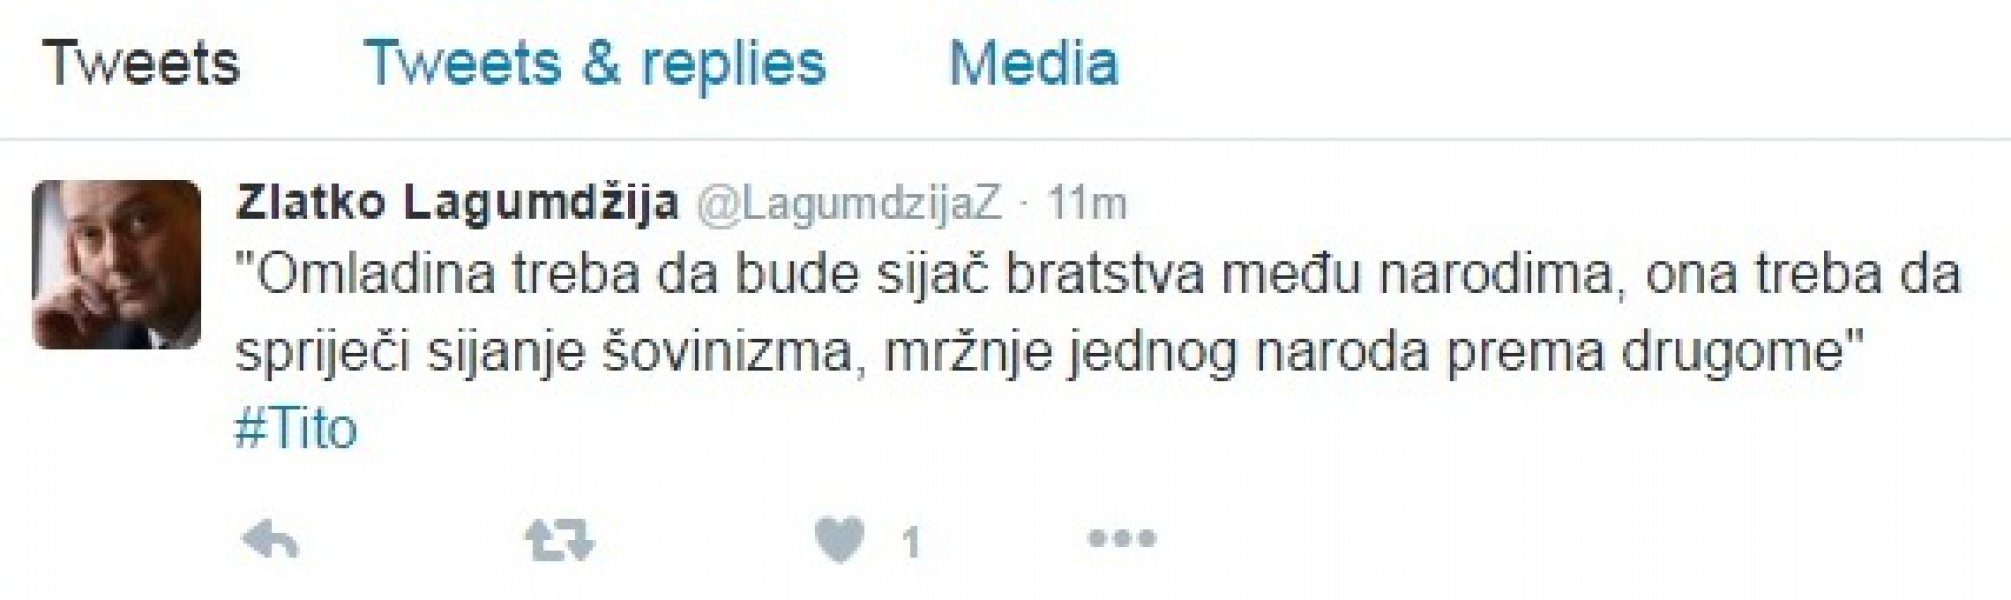 lagumdzija-twitter